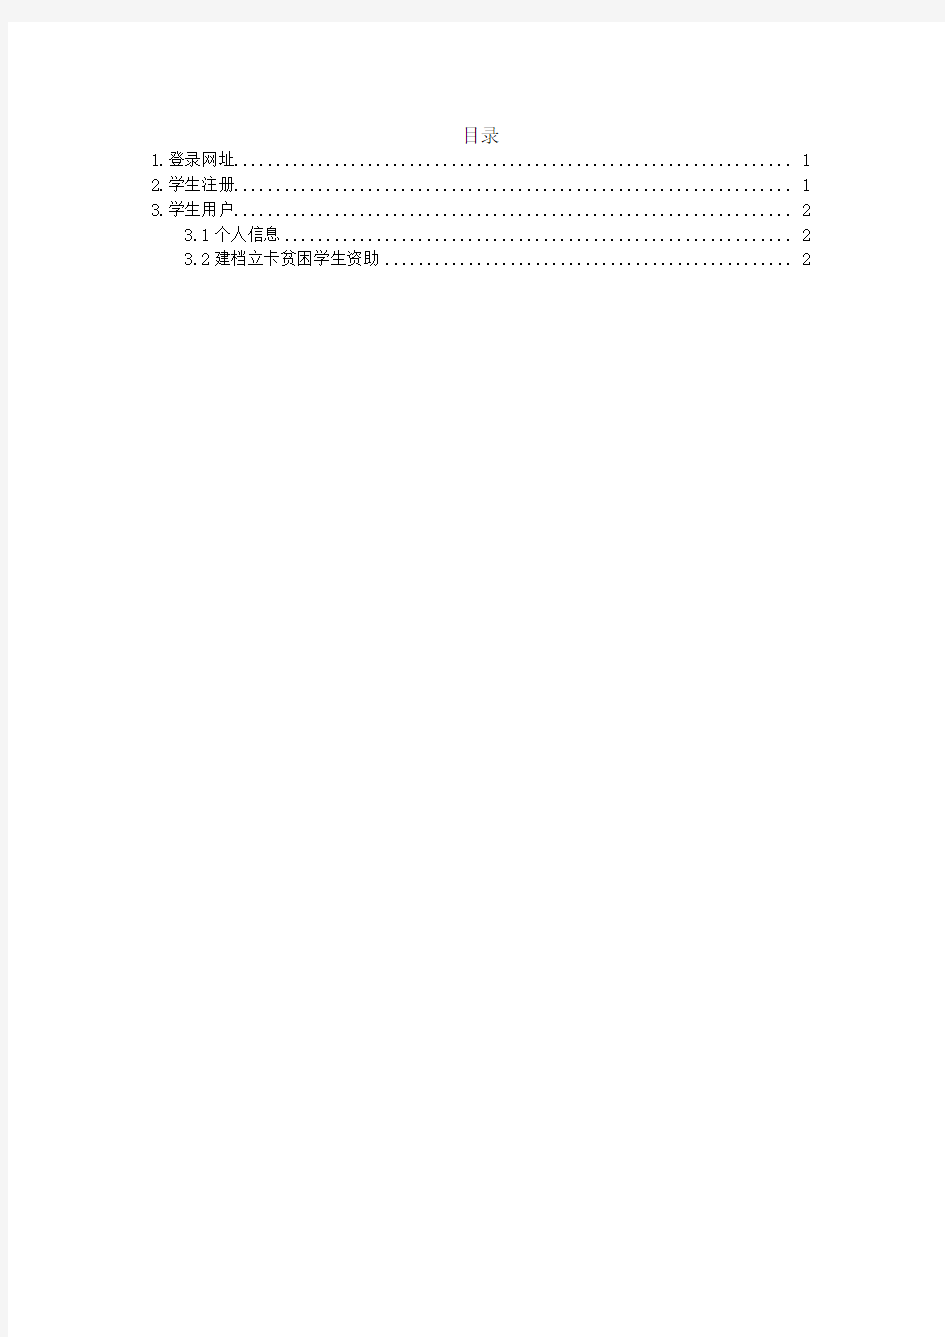 四川省学生资助管理系统操作手册—建档立卡